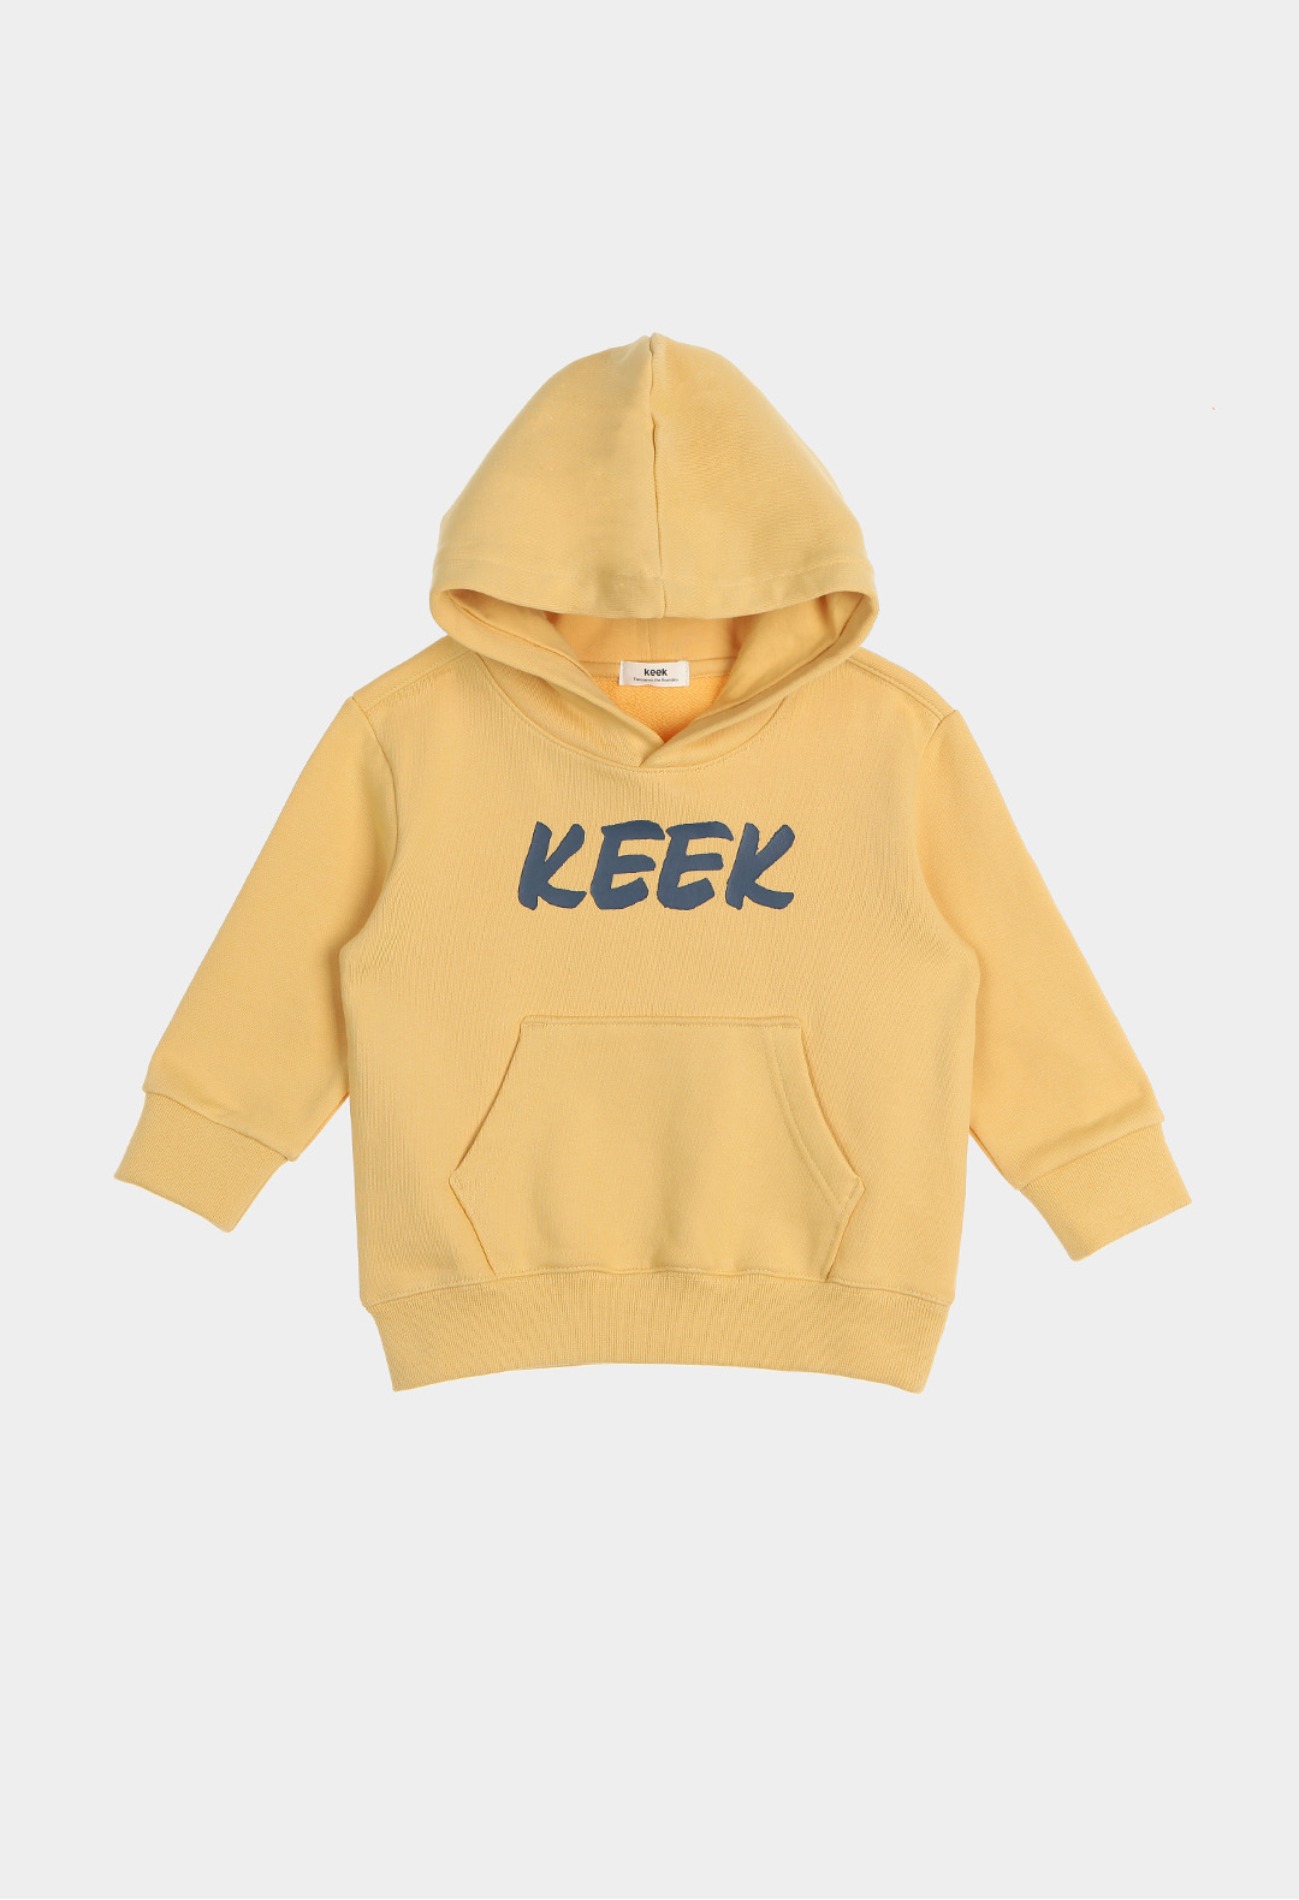 keek [Kids] KEEEK Hoodie - Yellow 스트릿패션 유니섹스브랜드 커플시밀러룩 남자쇼핑몰 여성의류쇼핑몰 후드티 힙색